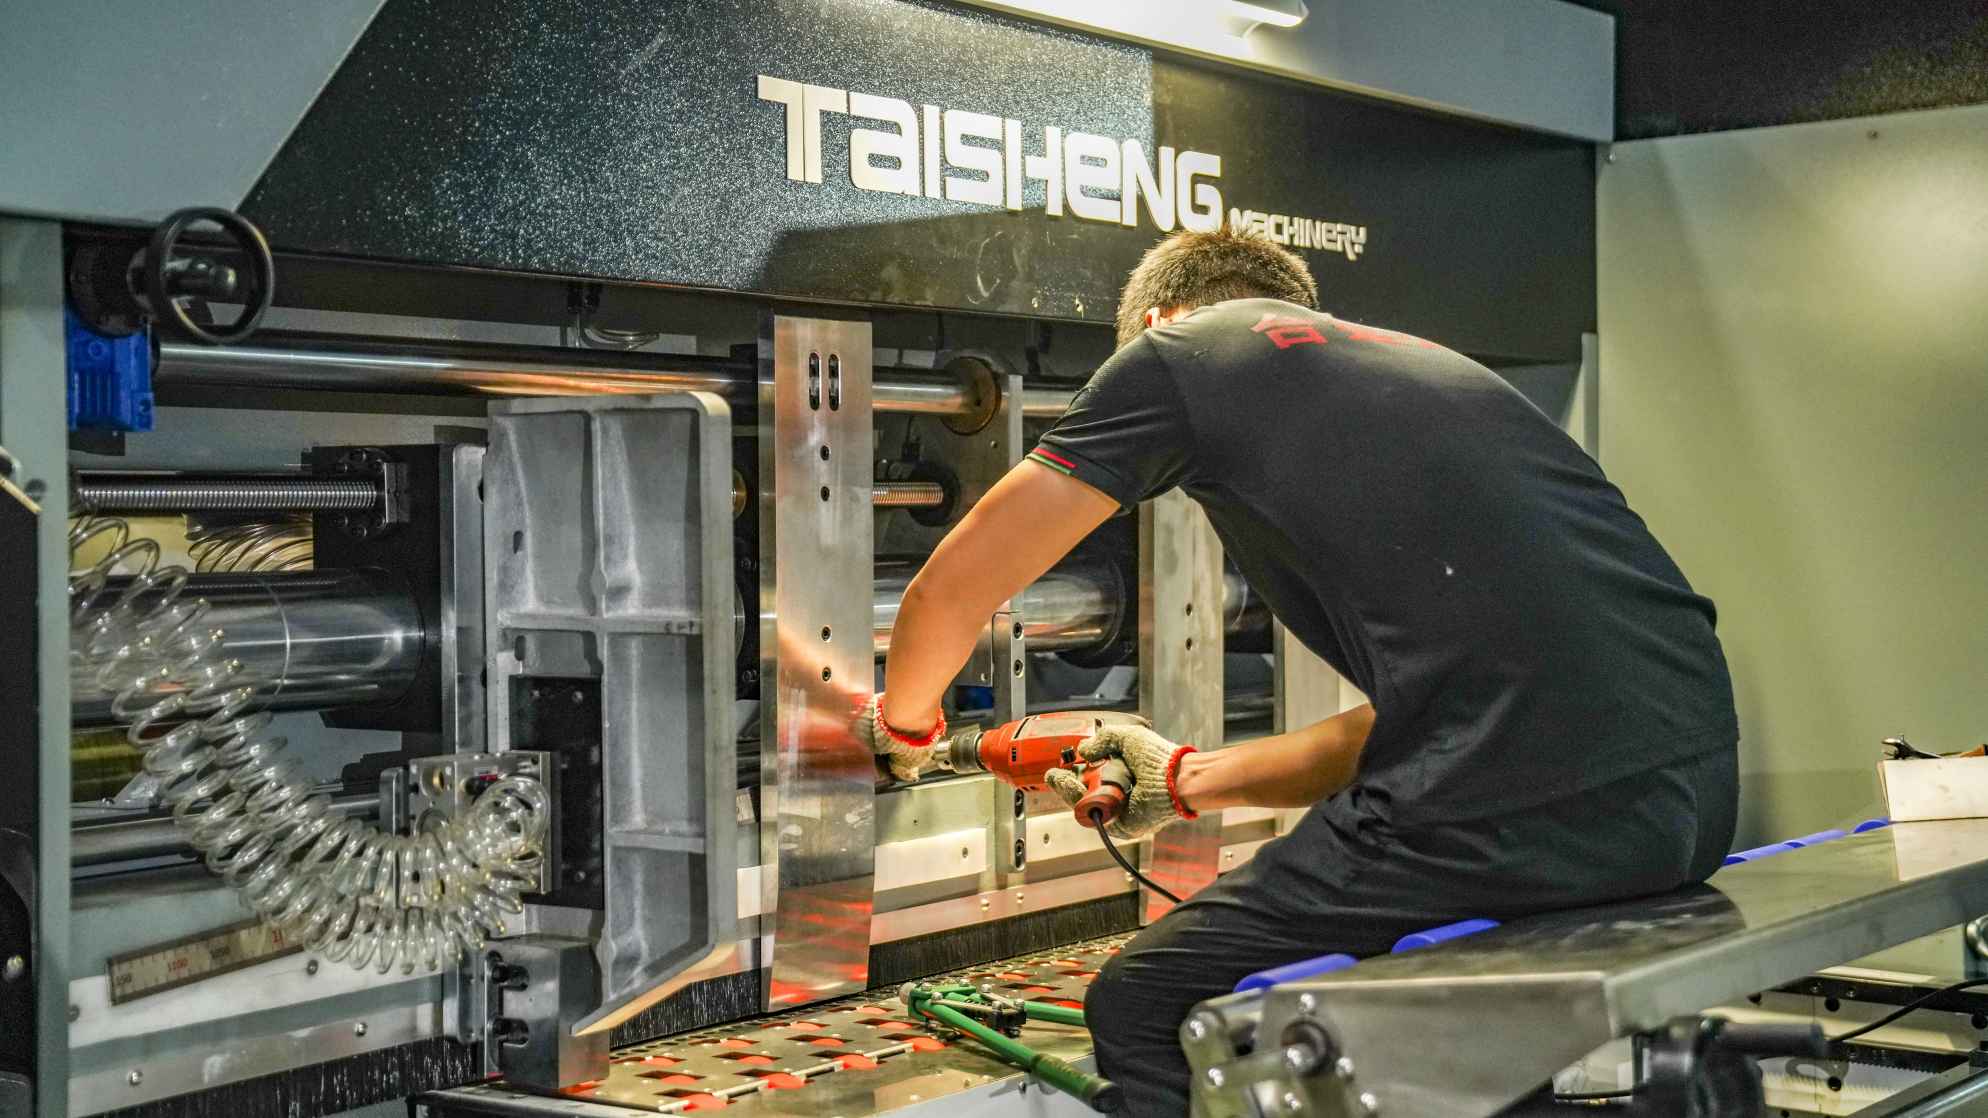 استخدم مصنع واحد ثلاث آلات كرتون TAISHENG في نفس الوقت